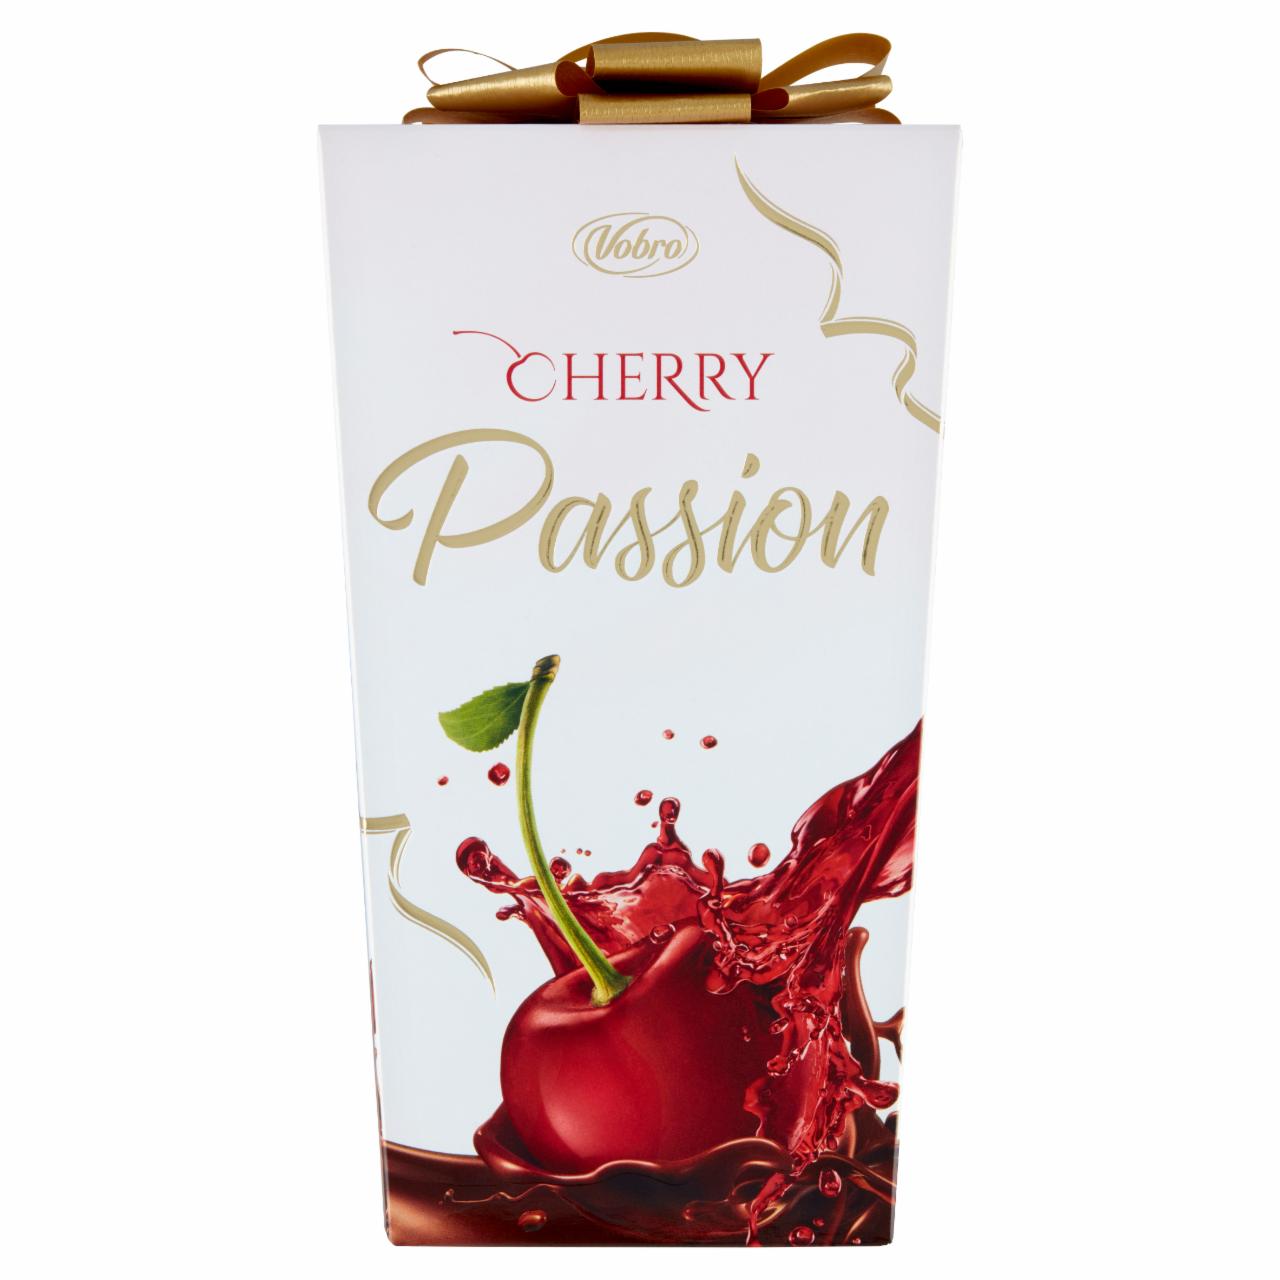 Zdjęcia - Vobro Cherry Passion Czekoladki nadziewane wiśnią w alkoholu 210 g